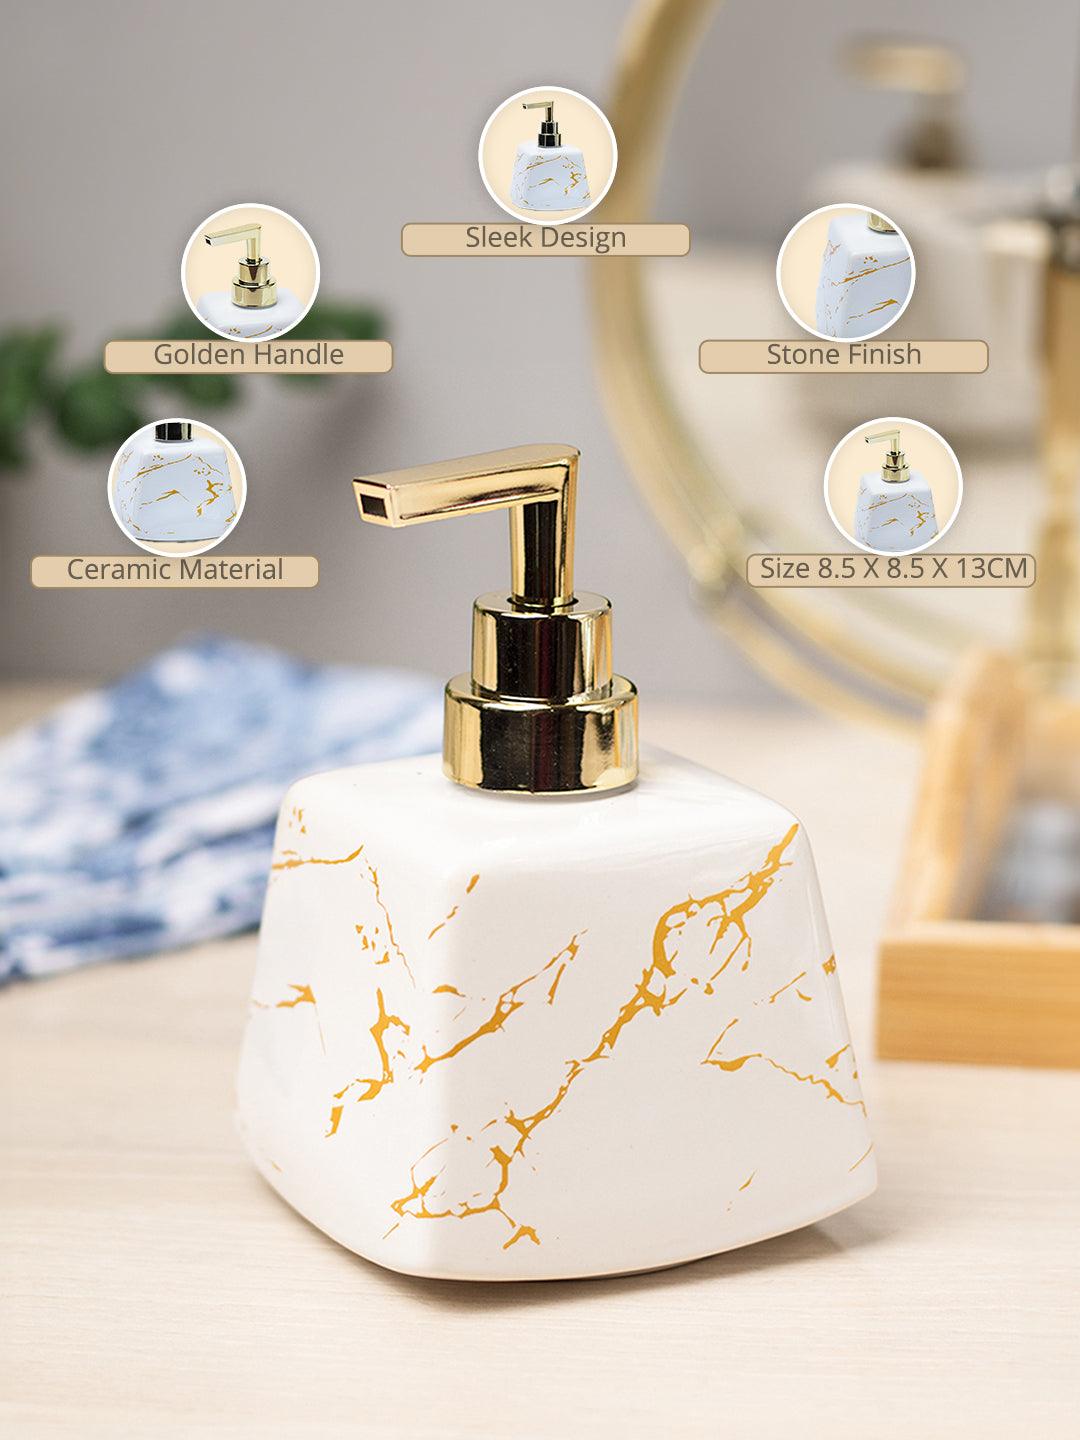 White Ceramic Soap Dispenser - Stone Finish, Bath Accessories - MARKET99